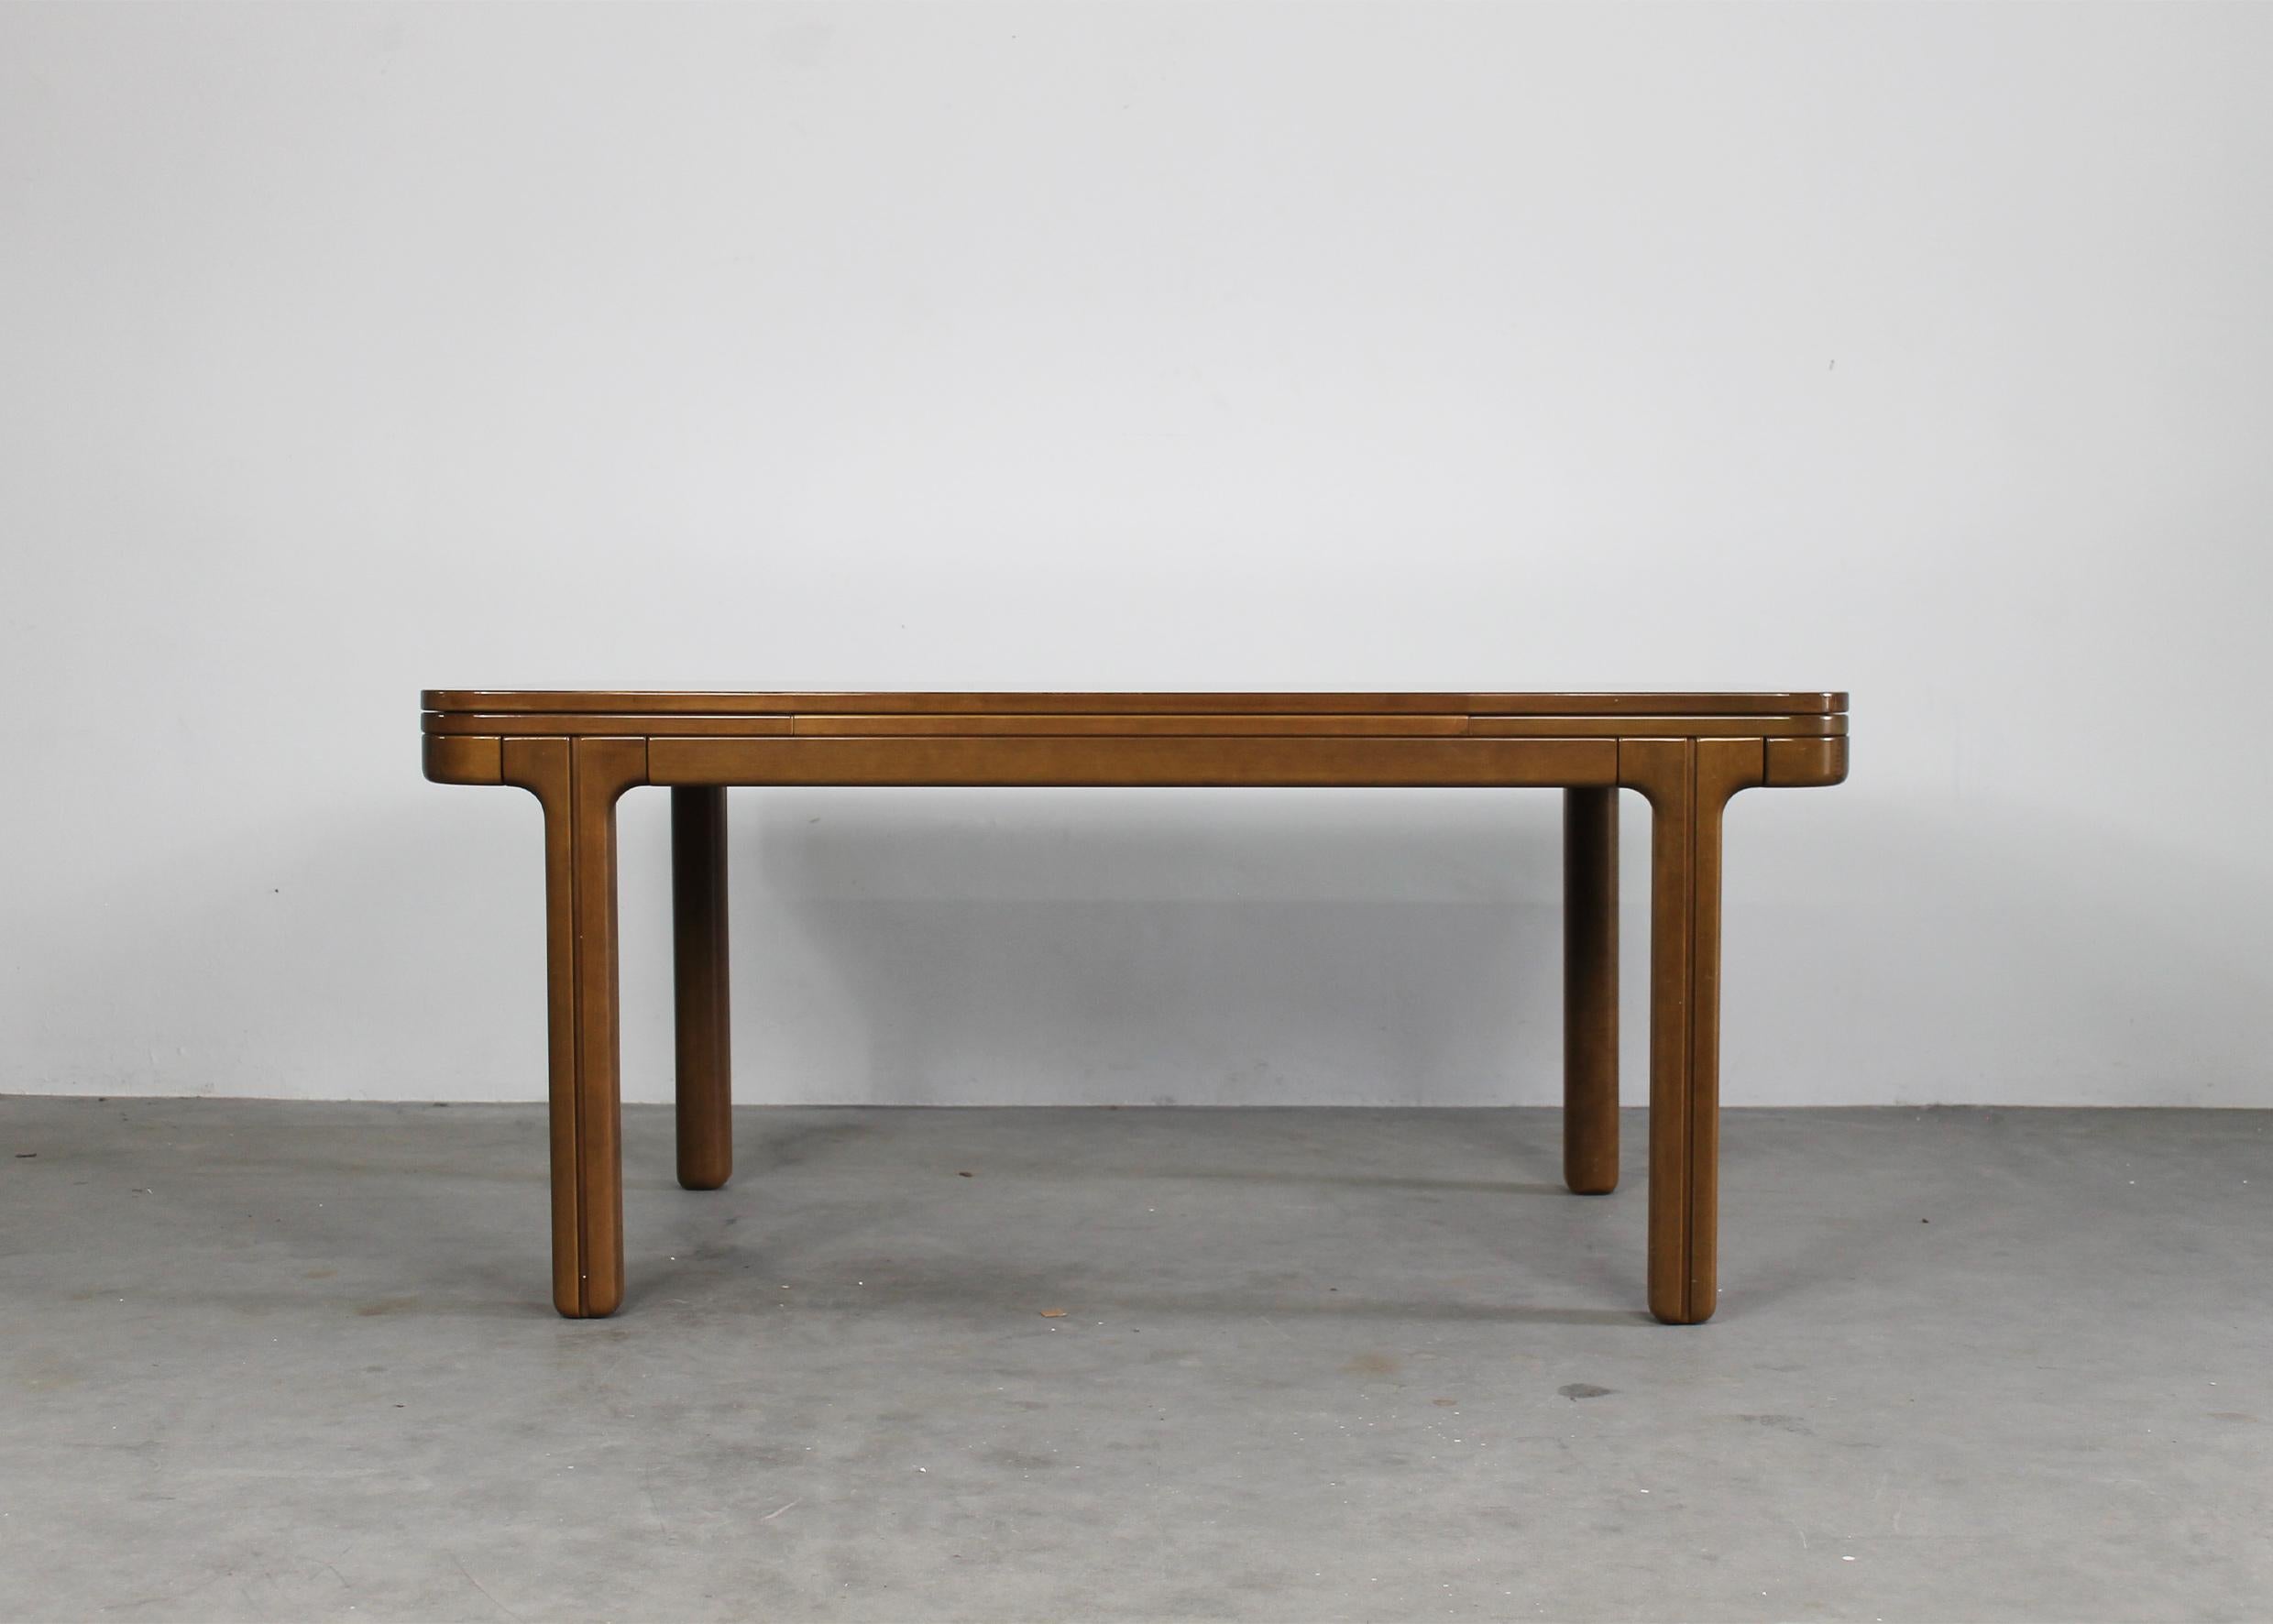 Table de salle à manger à rallonge en bois conçue par Ilmari Tapiovaara dans les années 1970. 

Cette table rare présente un plateau rectangulaire aux élégants bords arrondis. Le plateau de table se fixe à la base par un système d'emboîtement. Les